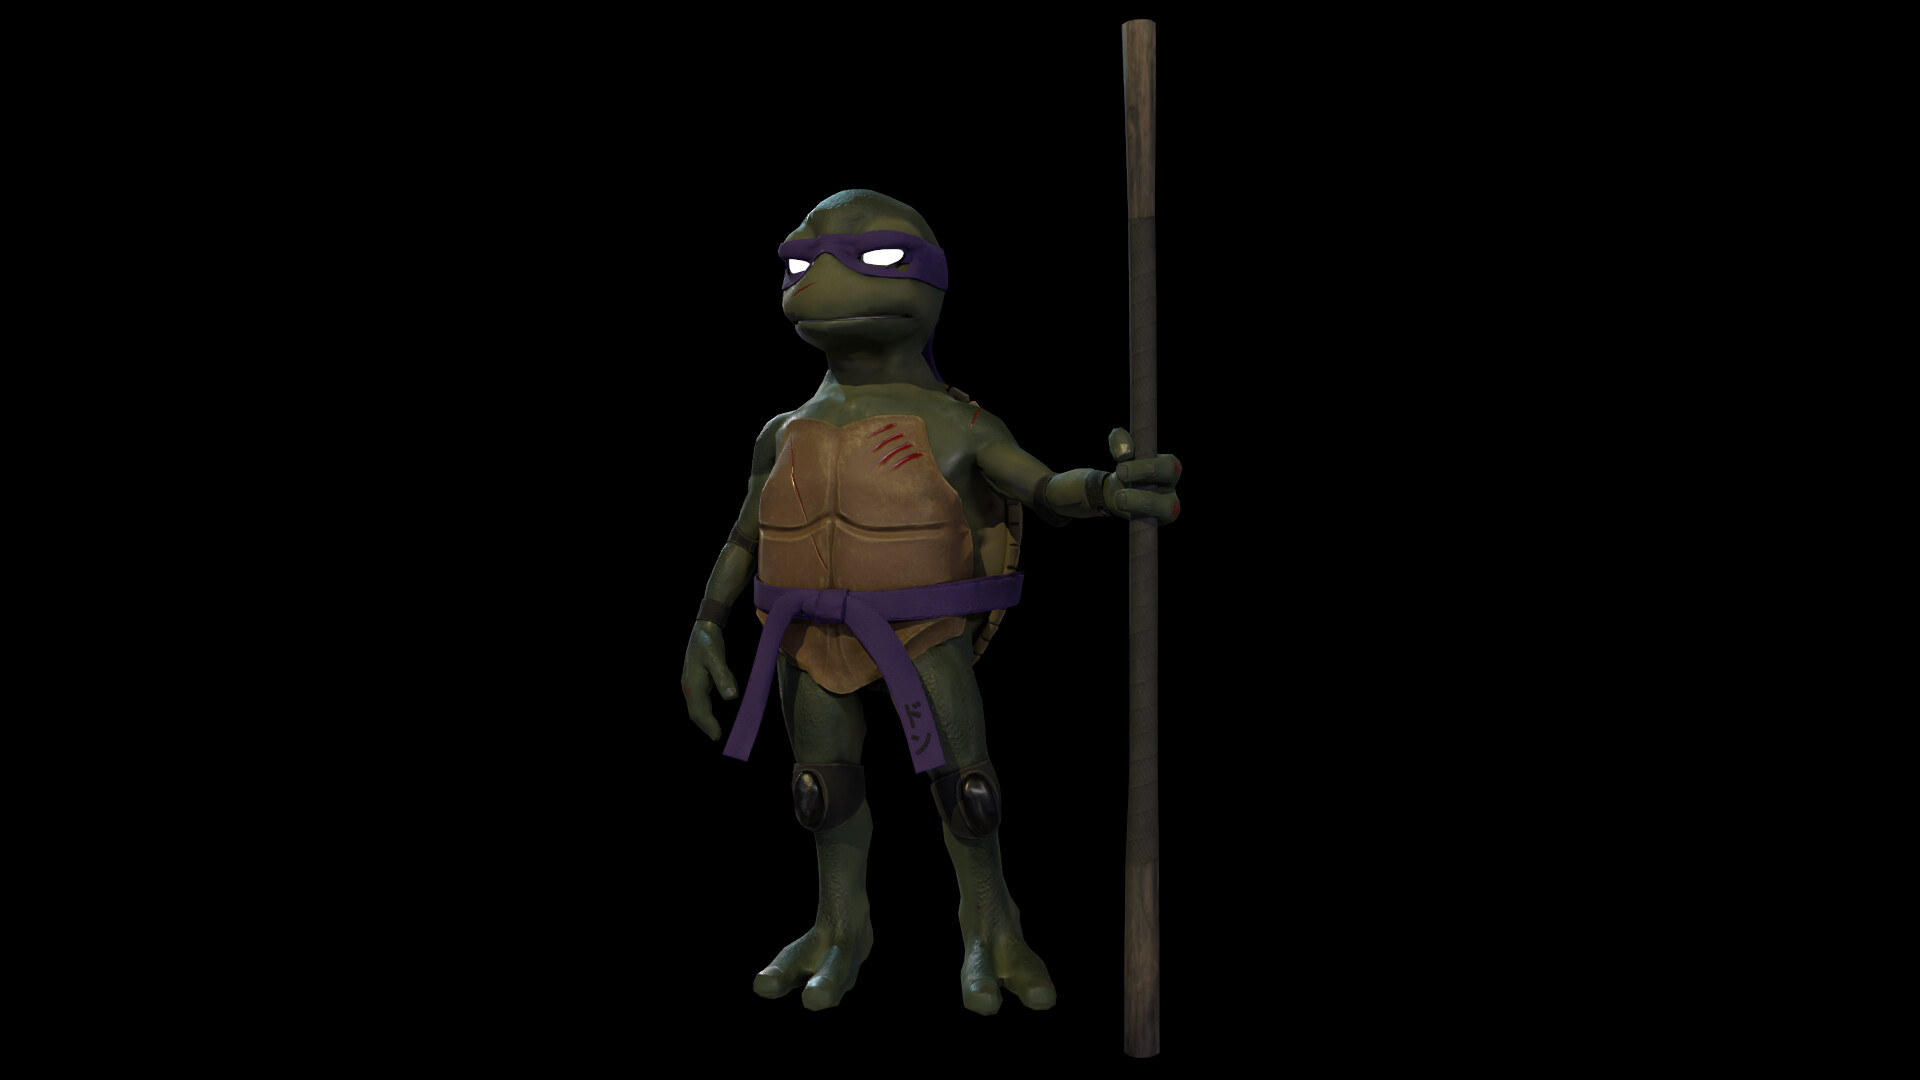 ArtStation - 260 Teenage Mutant Ninja Turtles Concept Reference